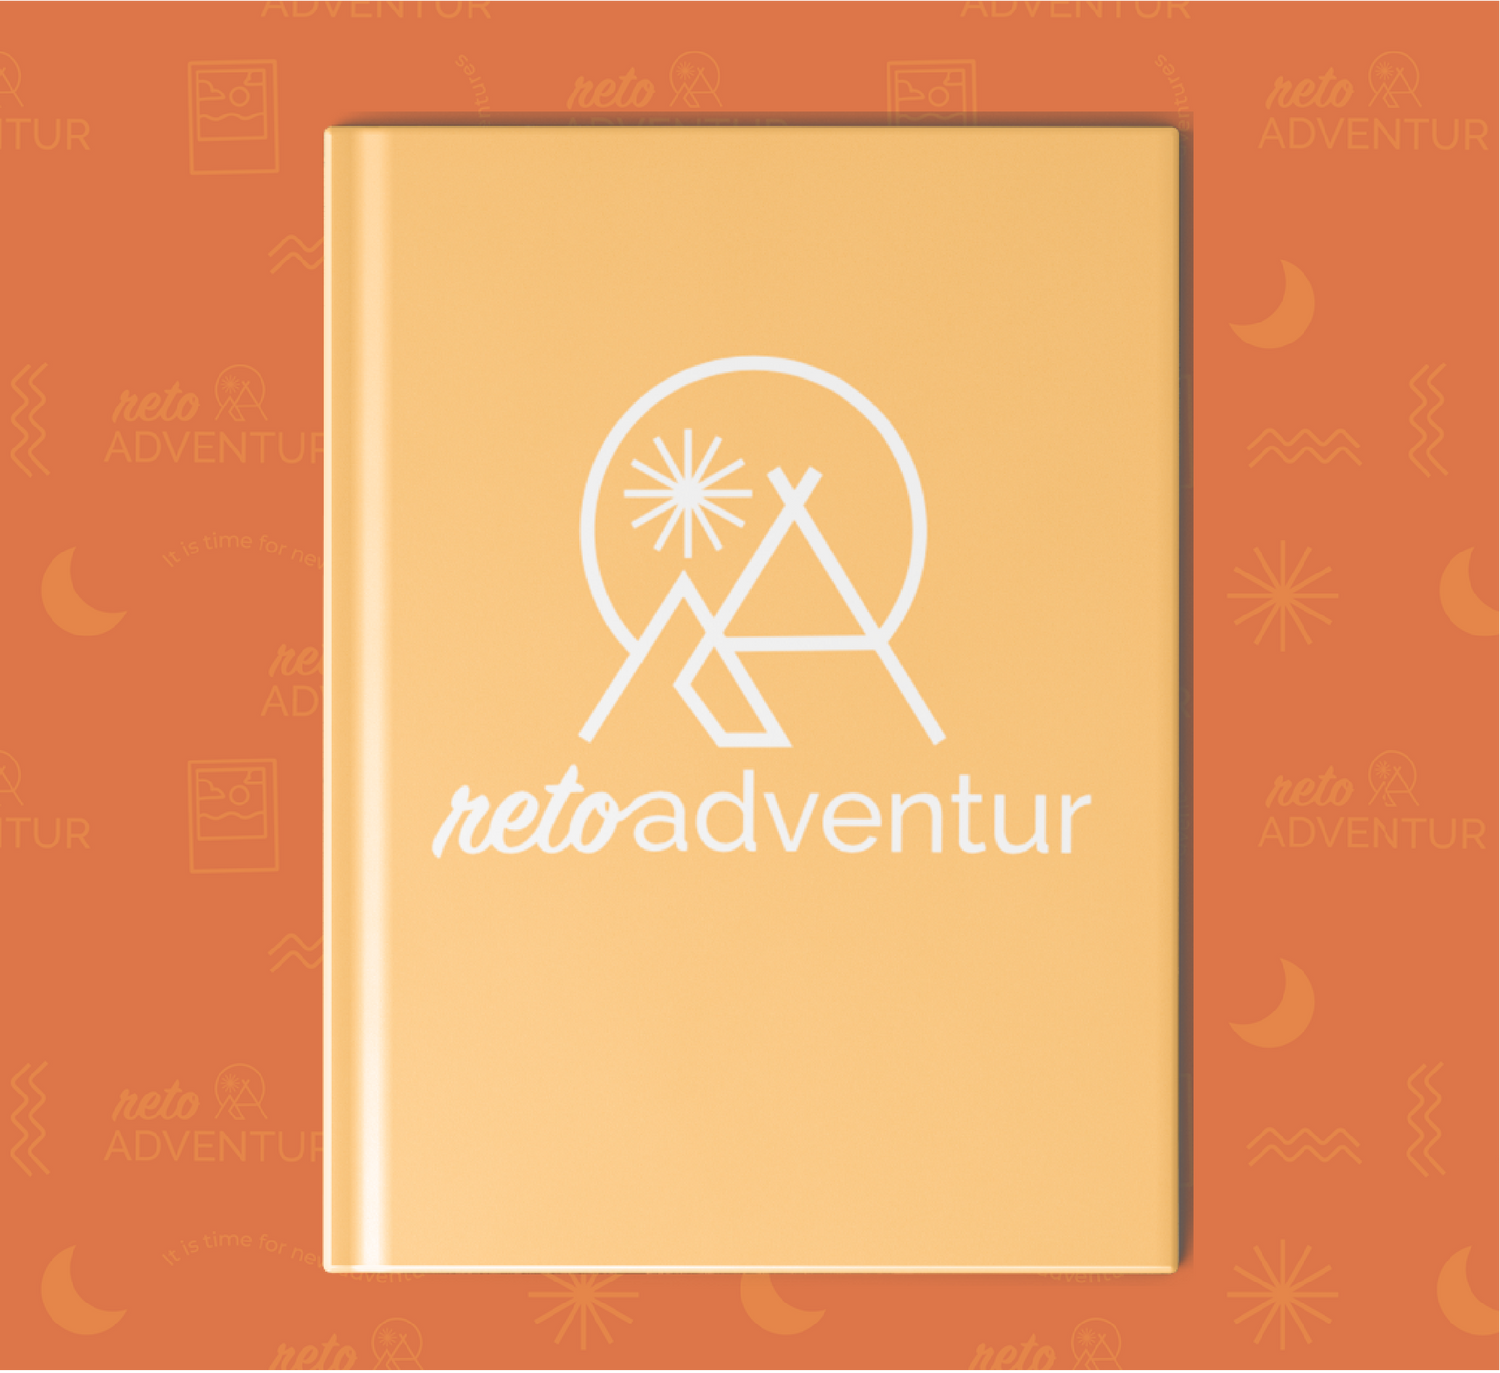 Reto Adventur - Libro de aventuras en pareja